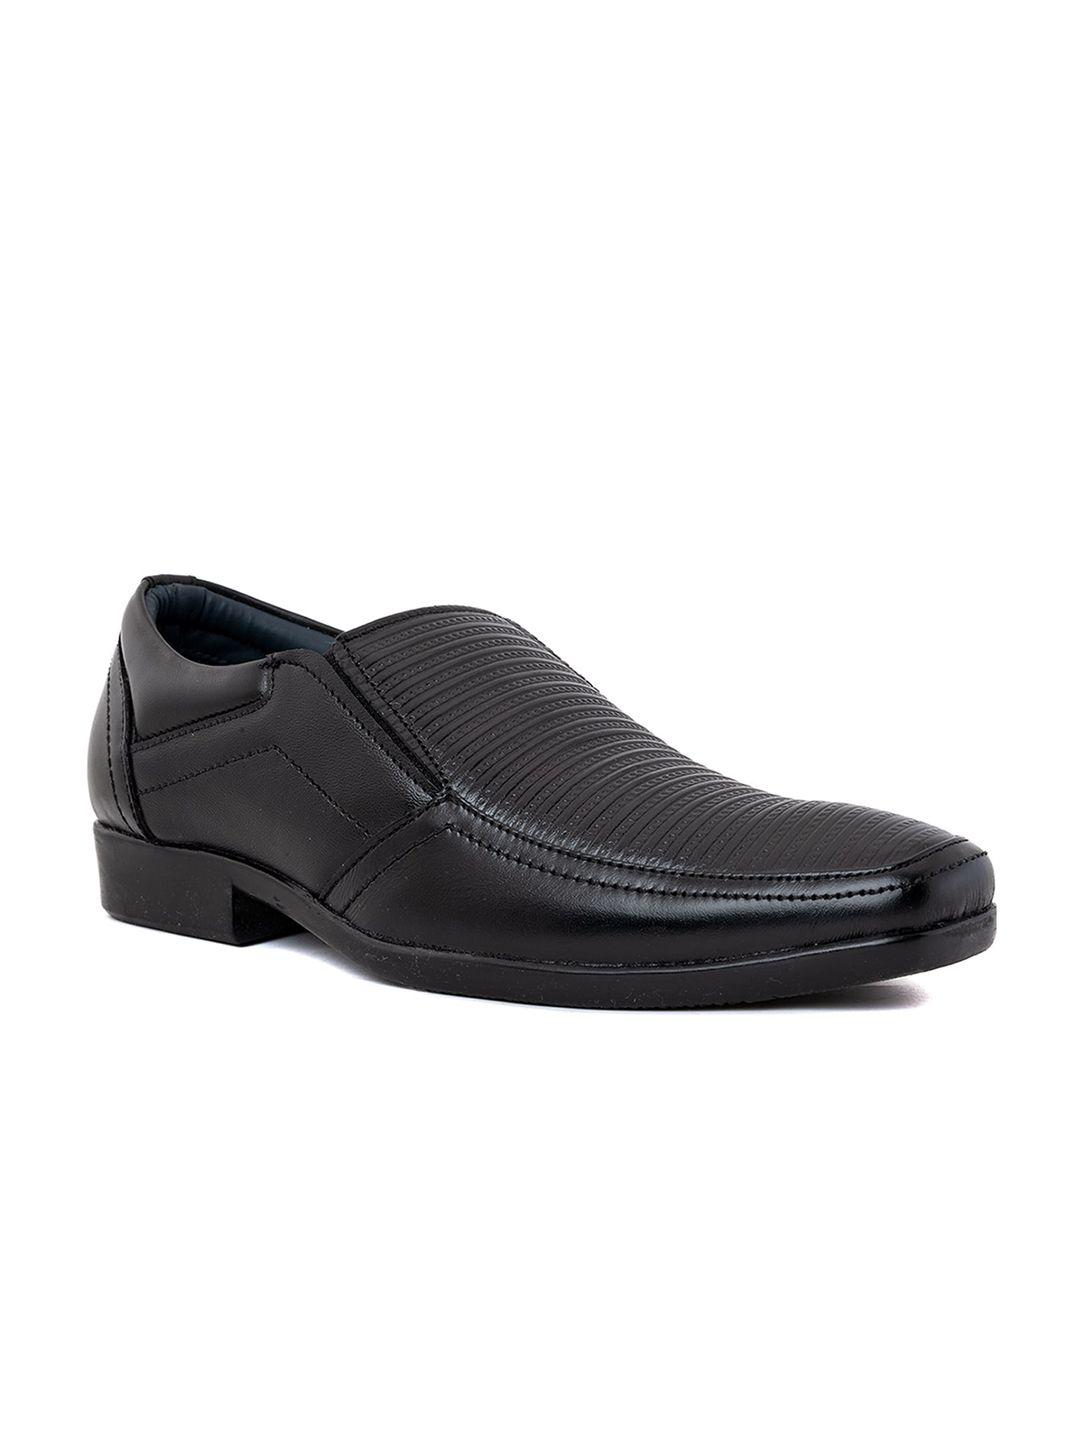 khadims men textured formal slip on shoes